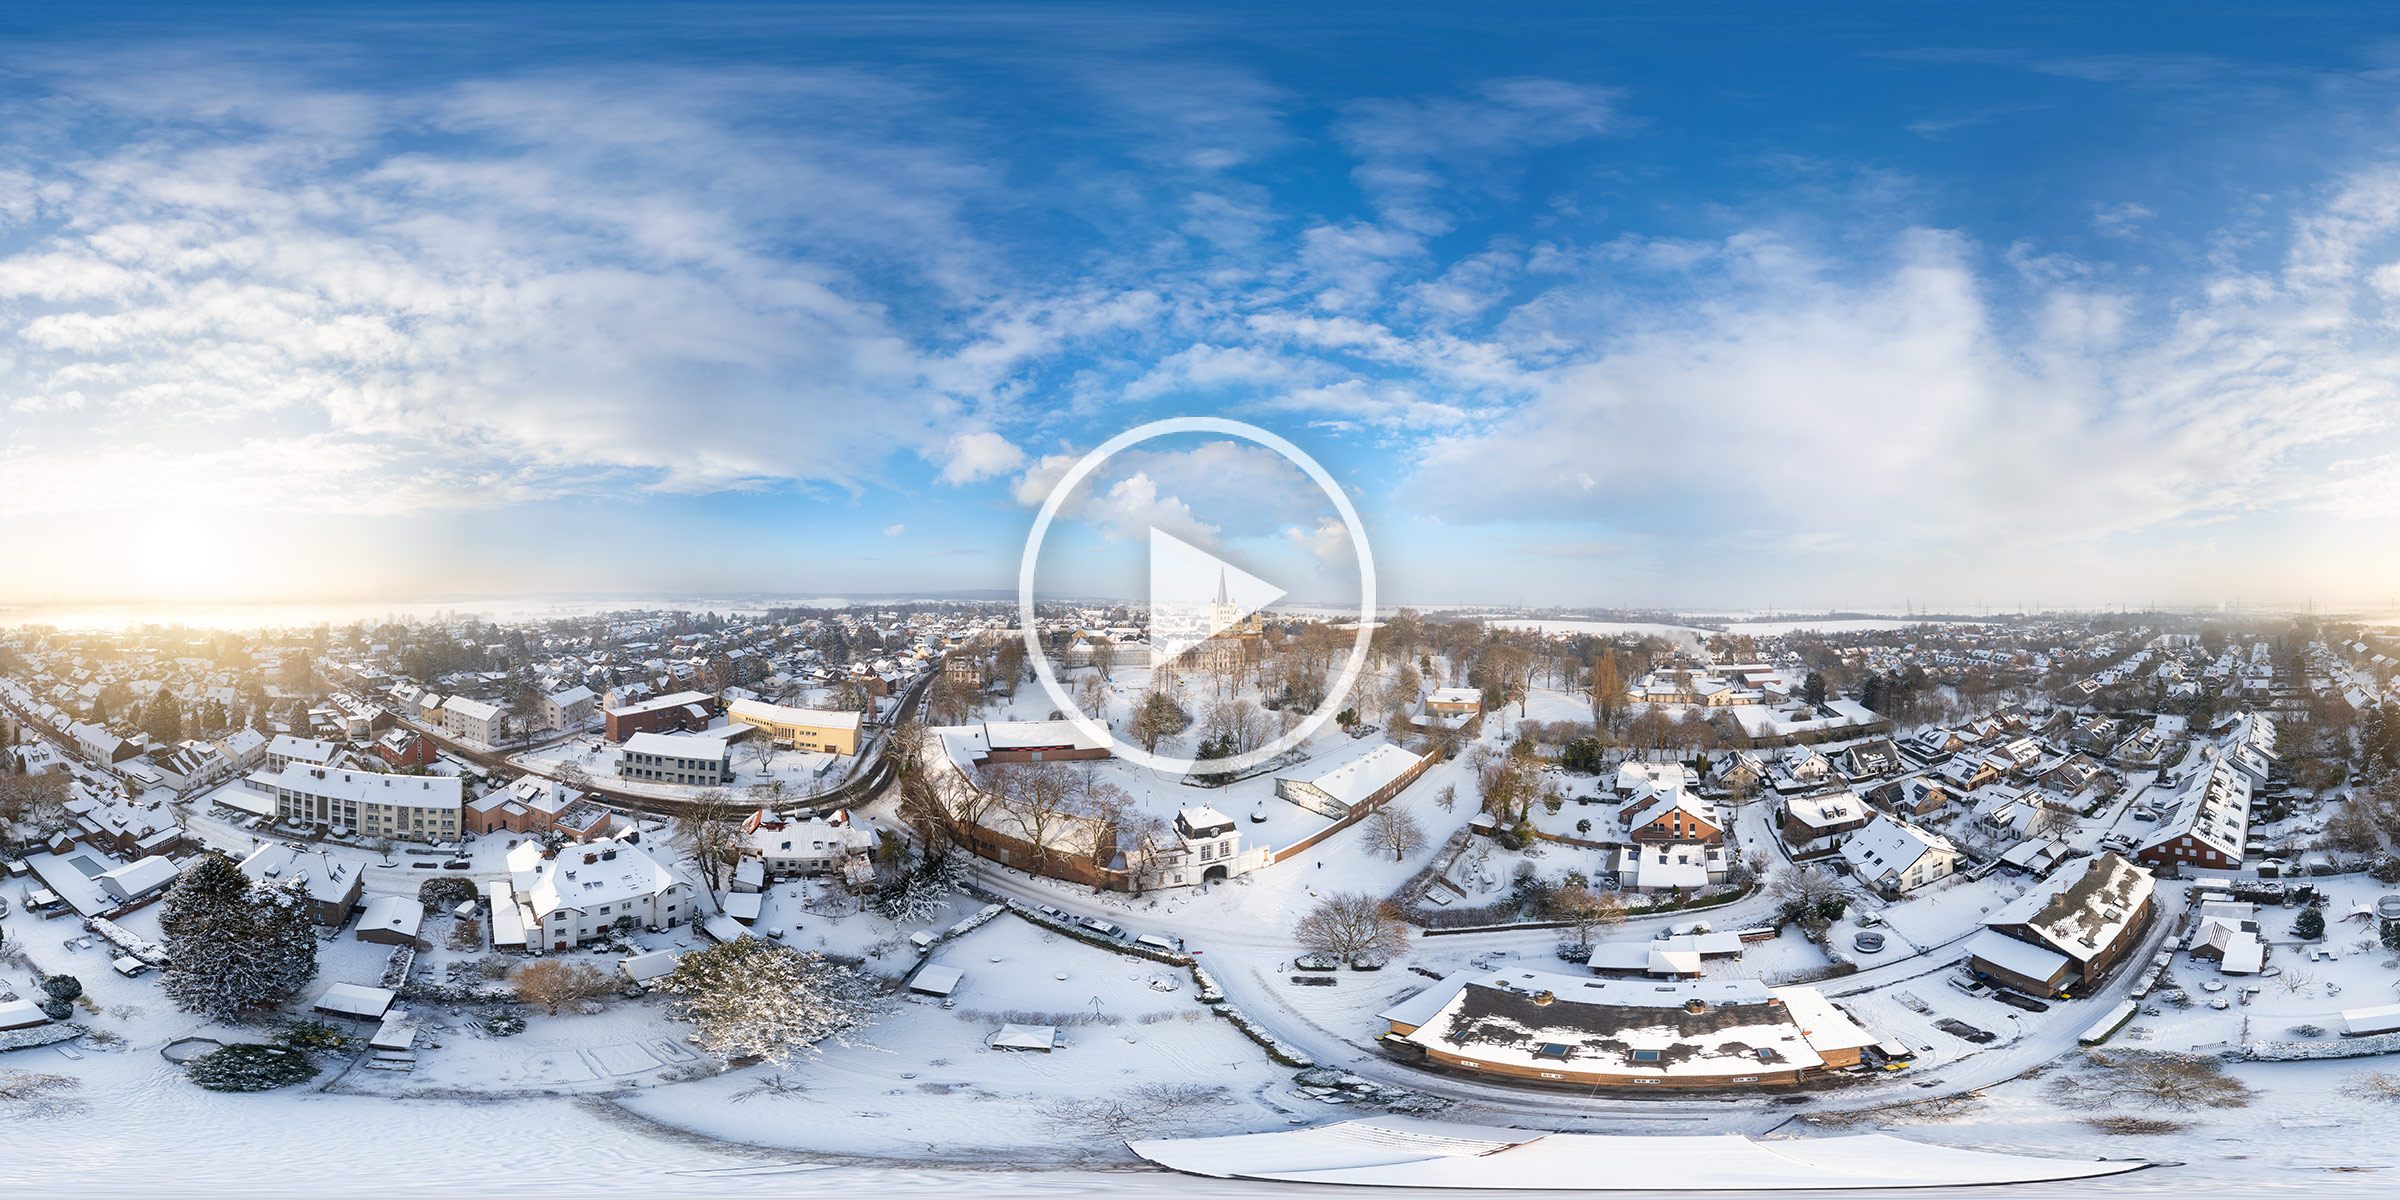 Interaktives Luftbildpanorama  in Brauweiler an einem sonnigen Morgen im Januar und bei Schnee  #240119-0339